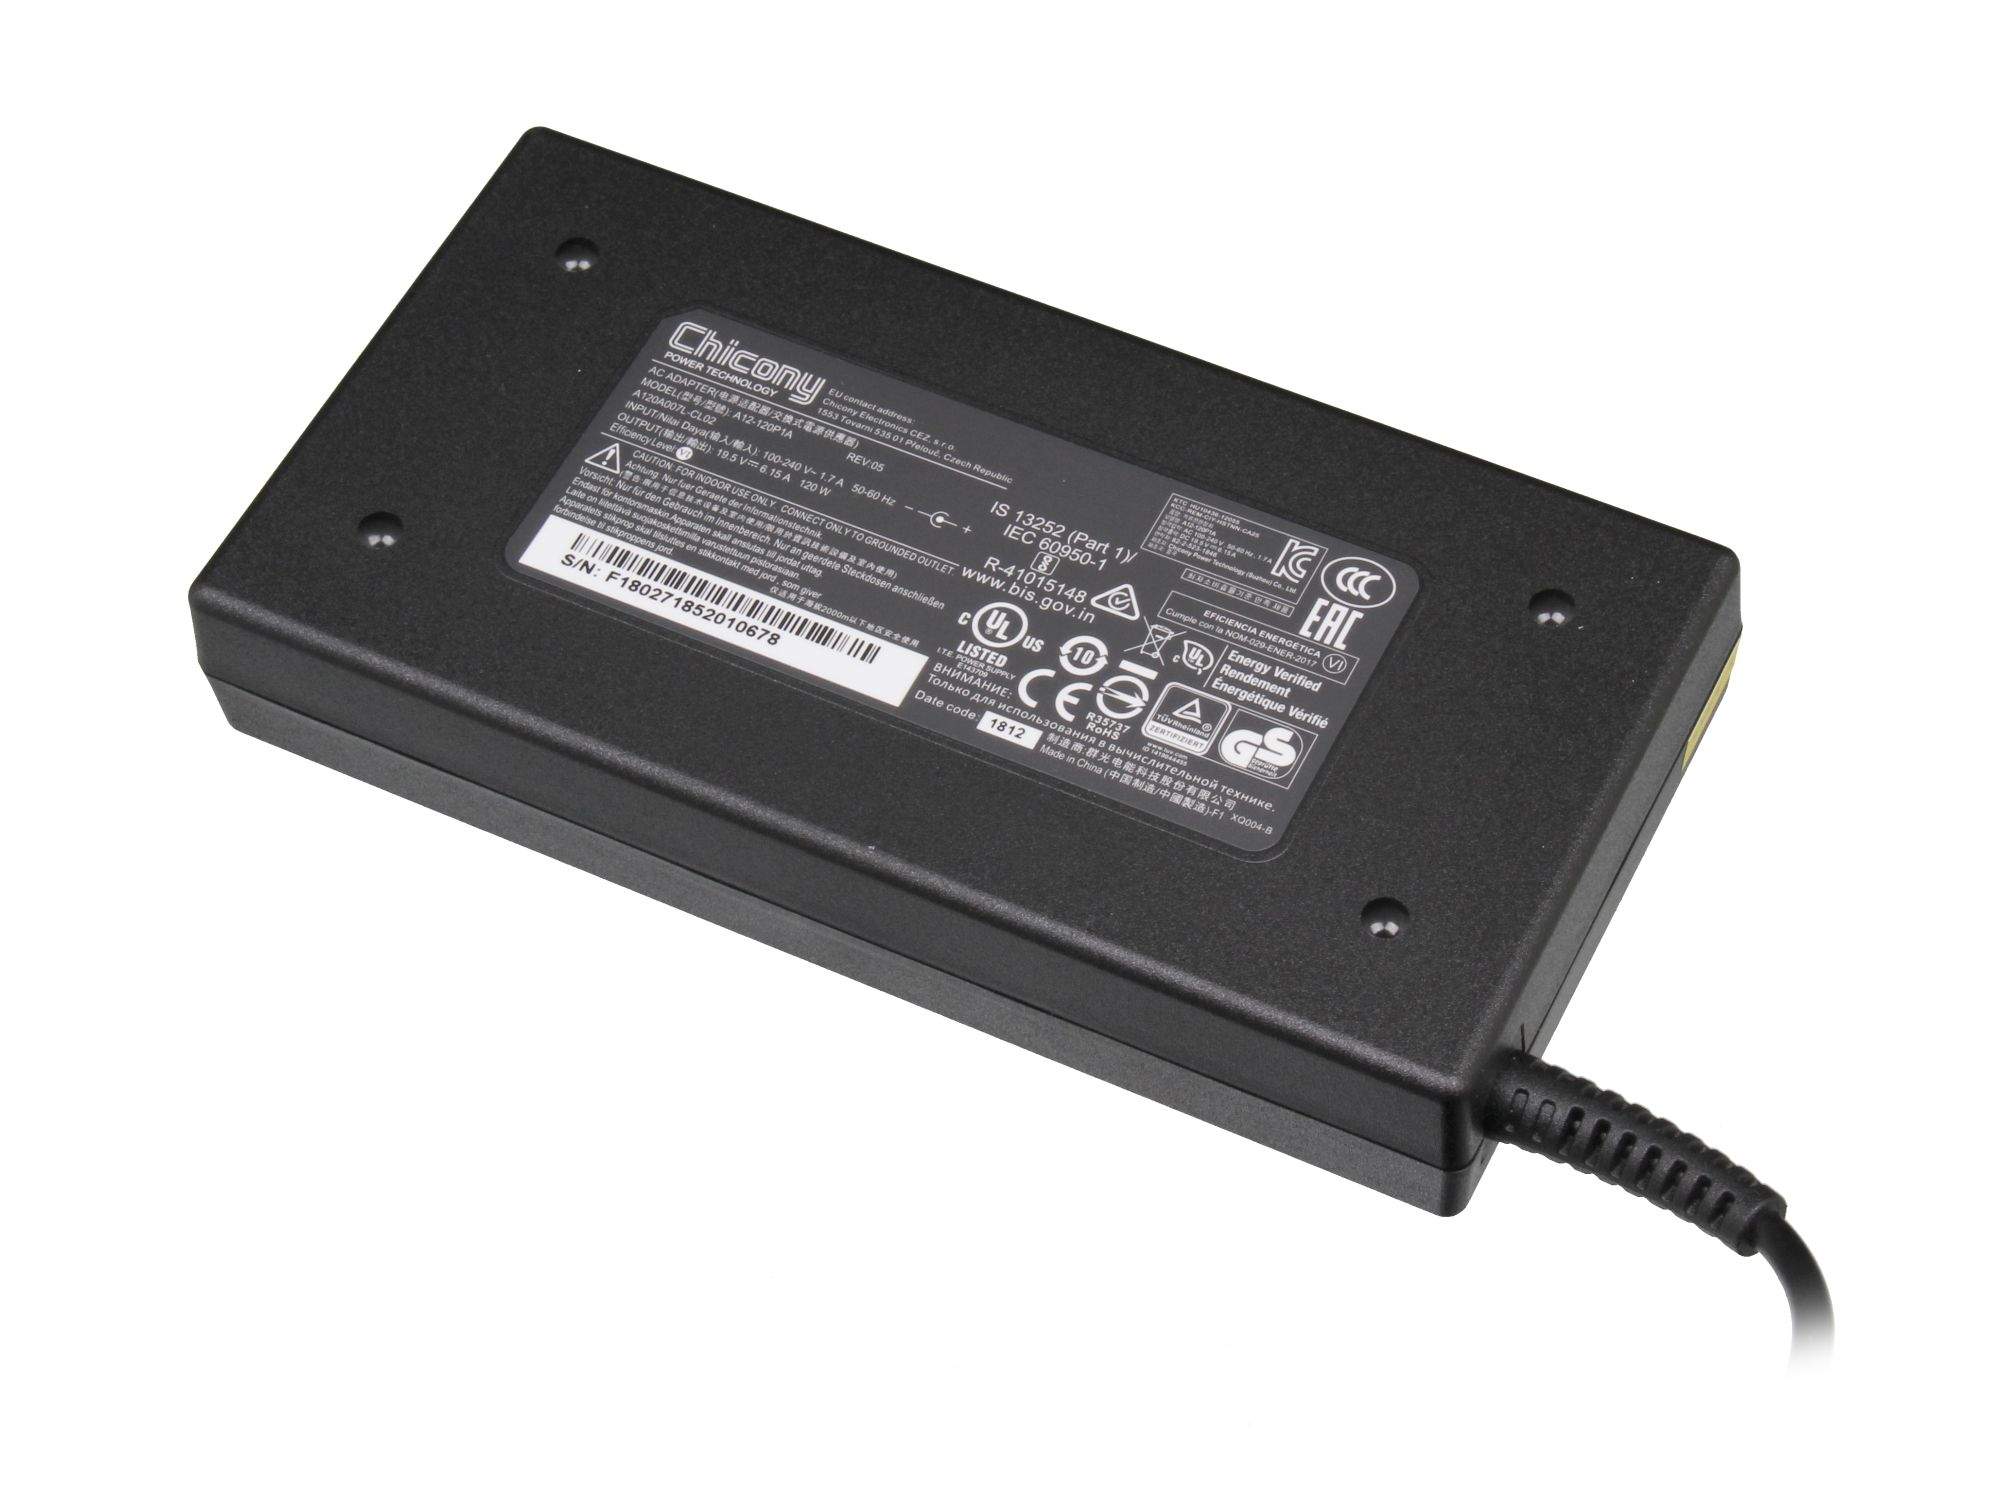 SCHENKER Netzteil 120 Watt für Schenker PCGH-Ultimate-Notebook (M570TU)